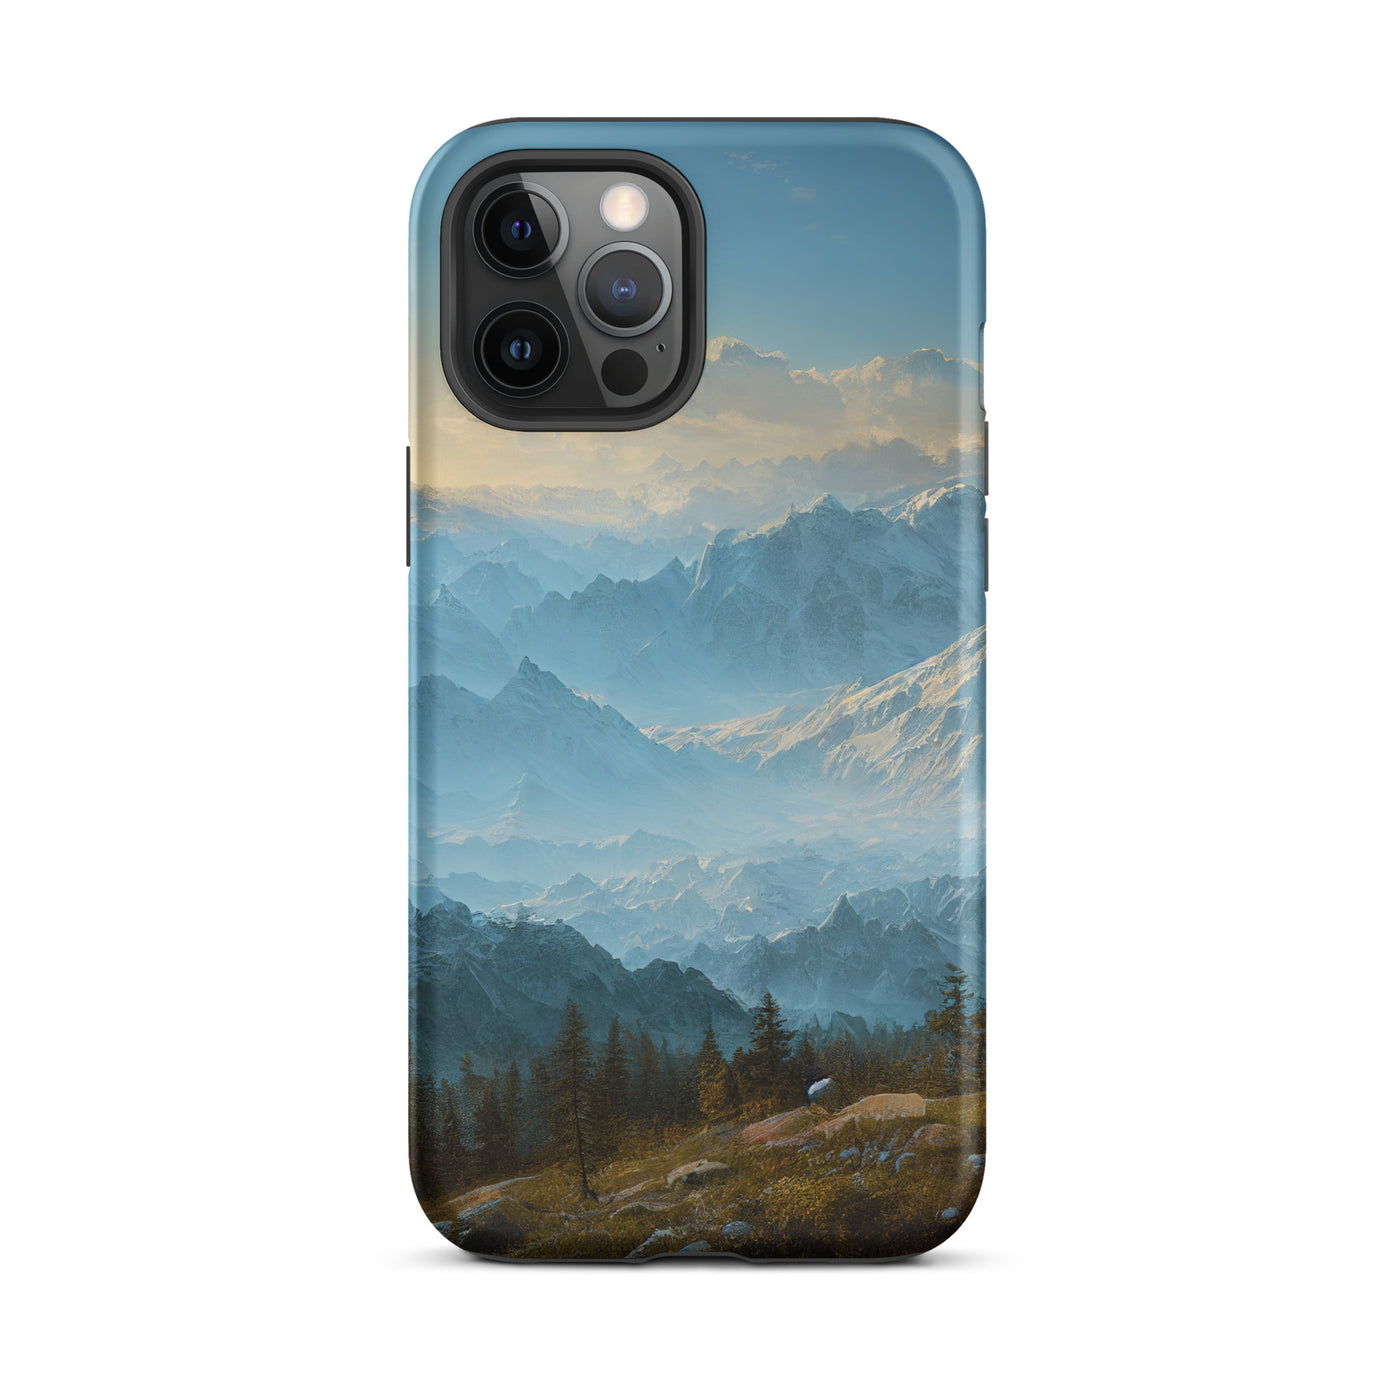 Schöne Berge mit Nebel bedeckt - Ölmalerei - iPhone Schutzhülle (robust) berge xxx iPhone 12 Pro Max